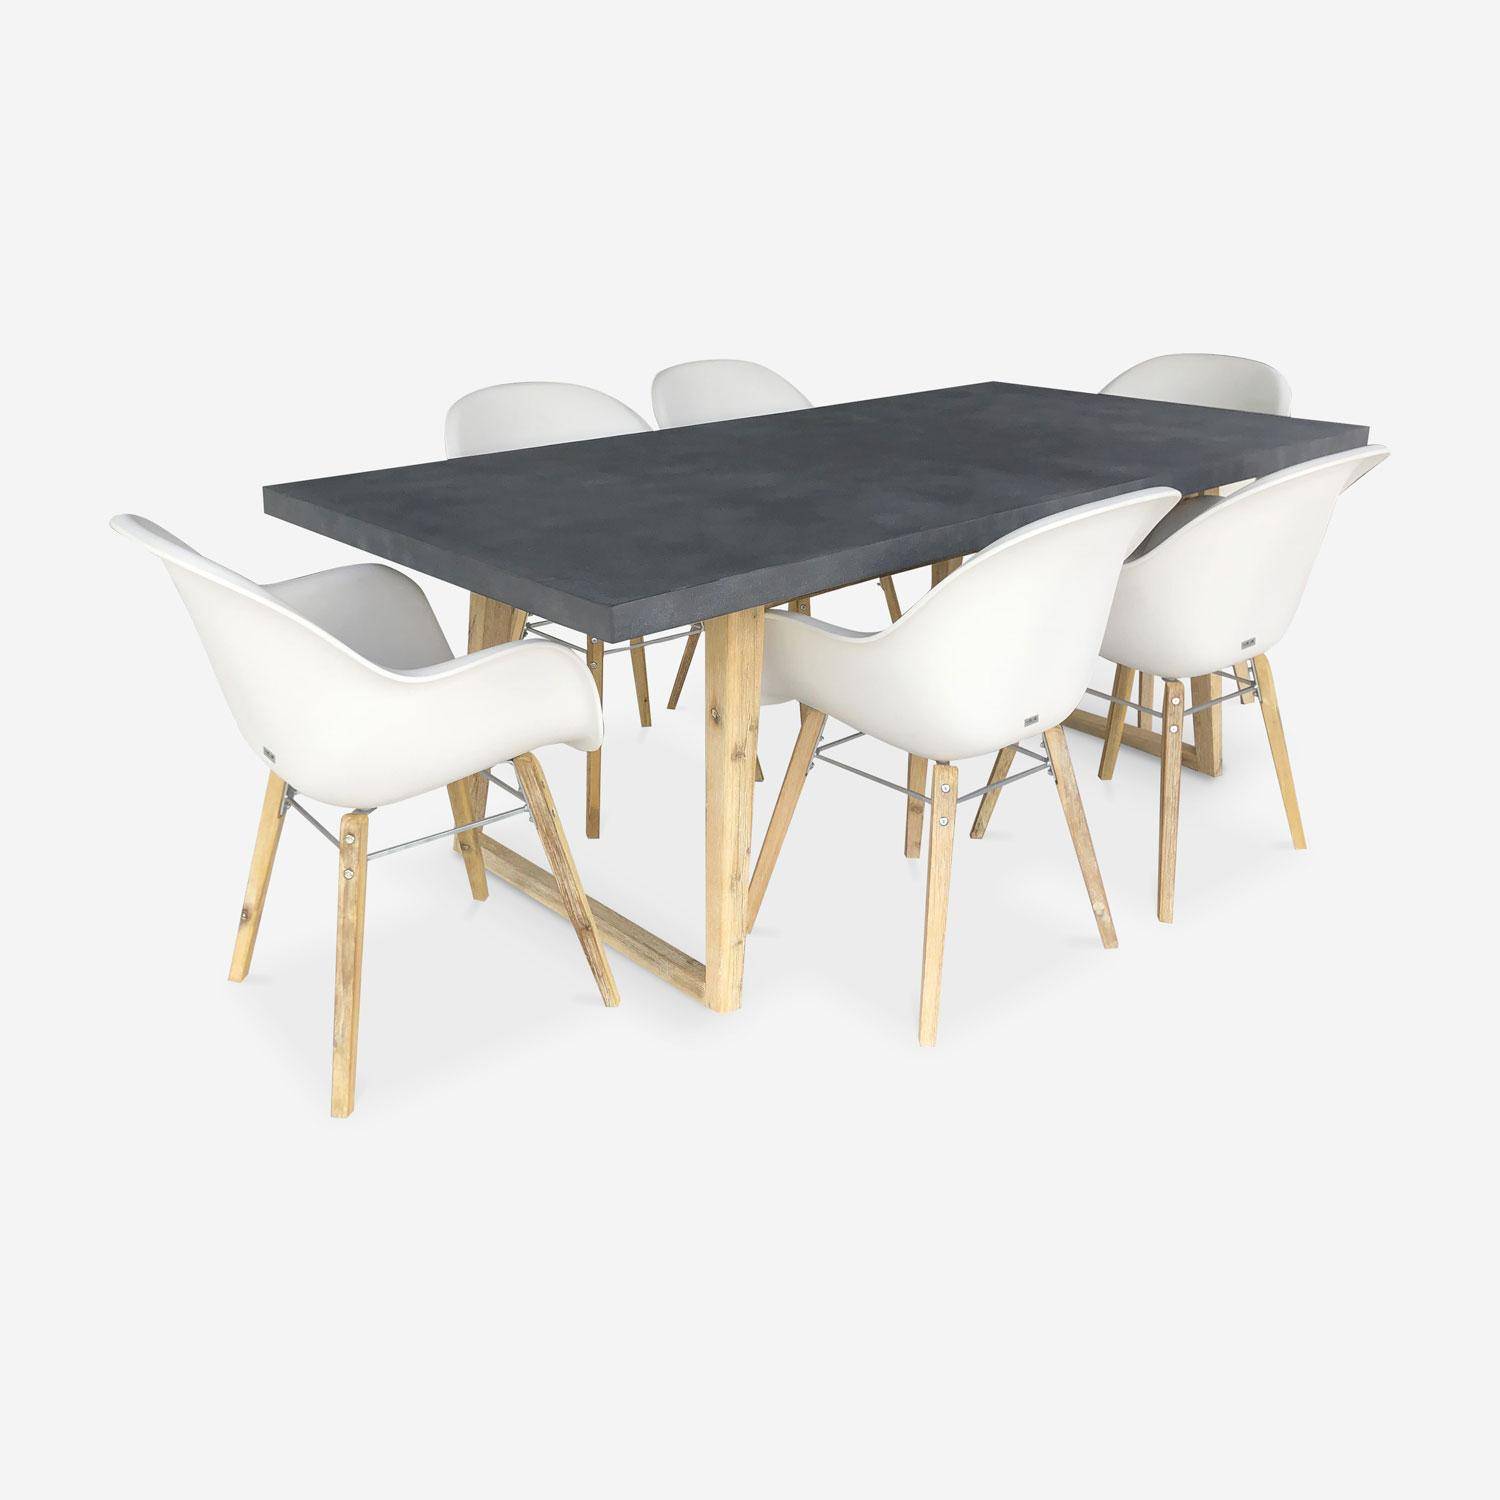 BORNEO 200 cm Faserzement-Gartentisch und 6 weiße CELEBES skandinavische Sessel weiß Photo1